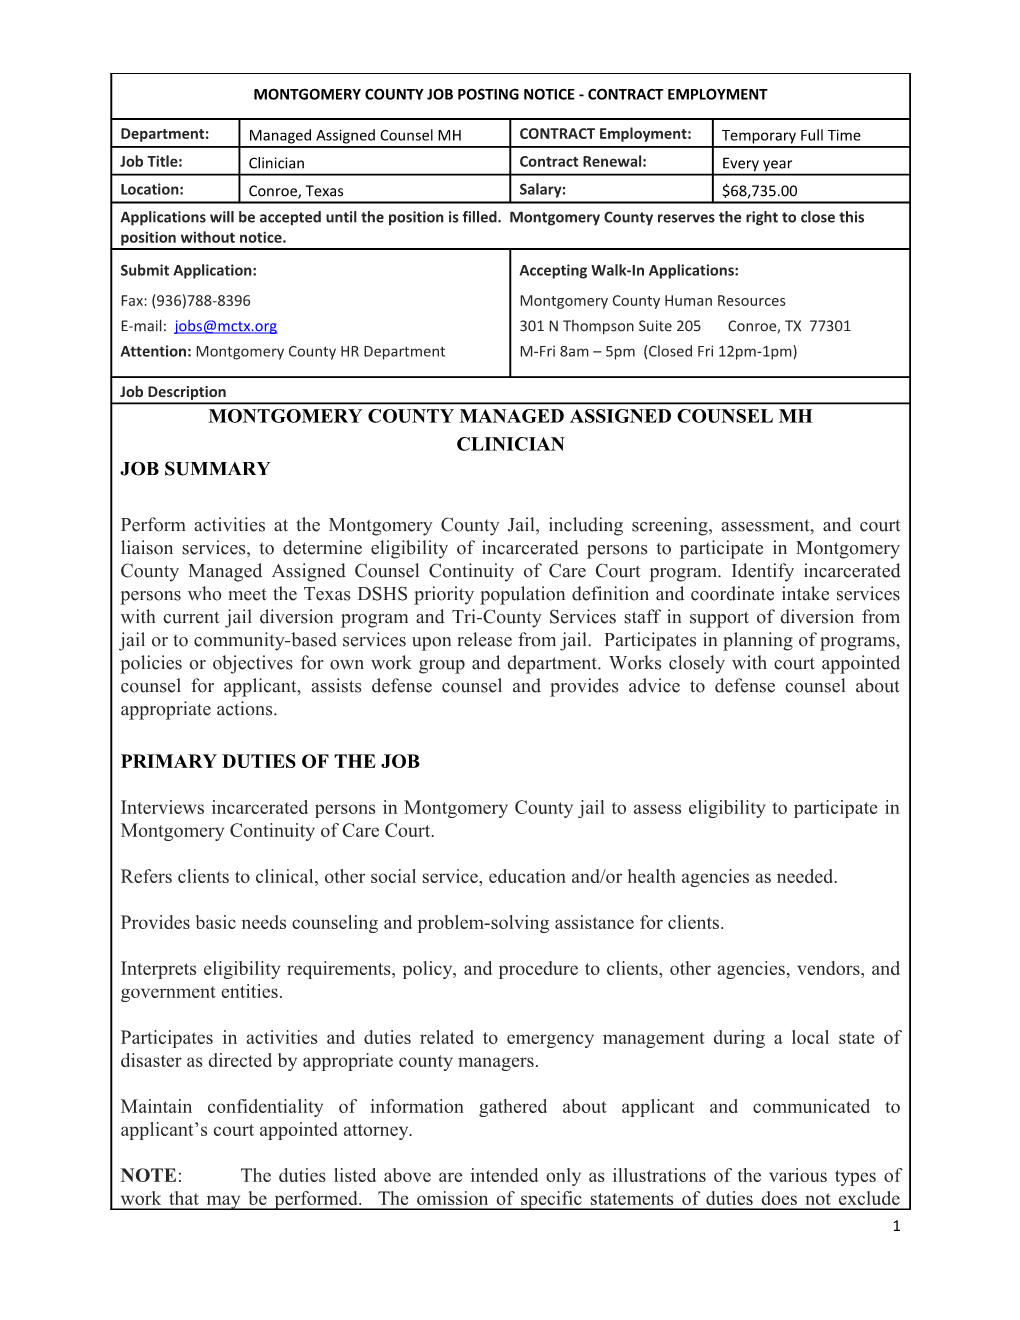 Montgomery County Job Posting Notice